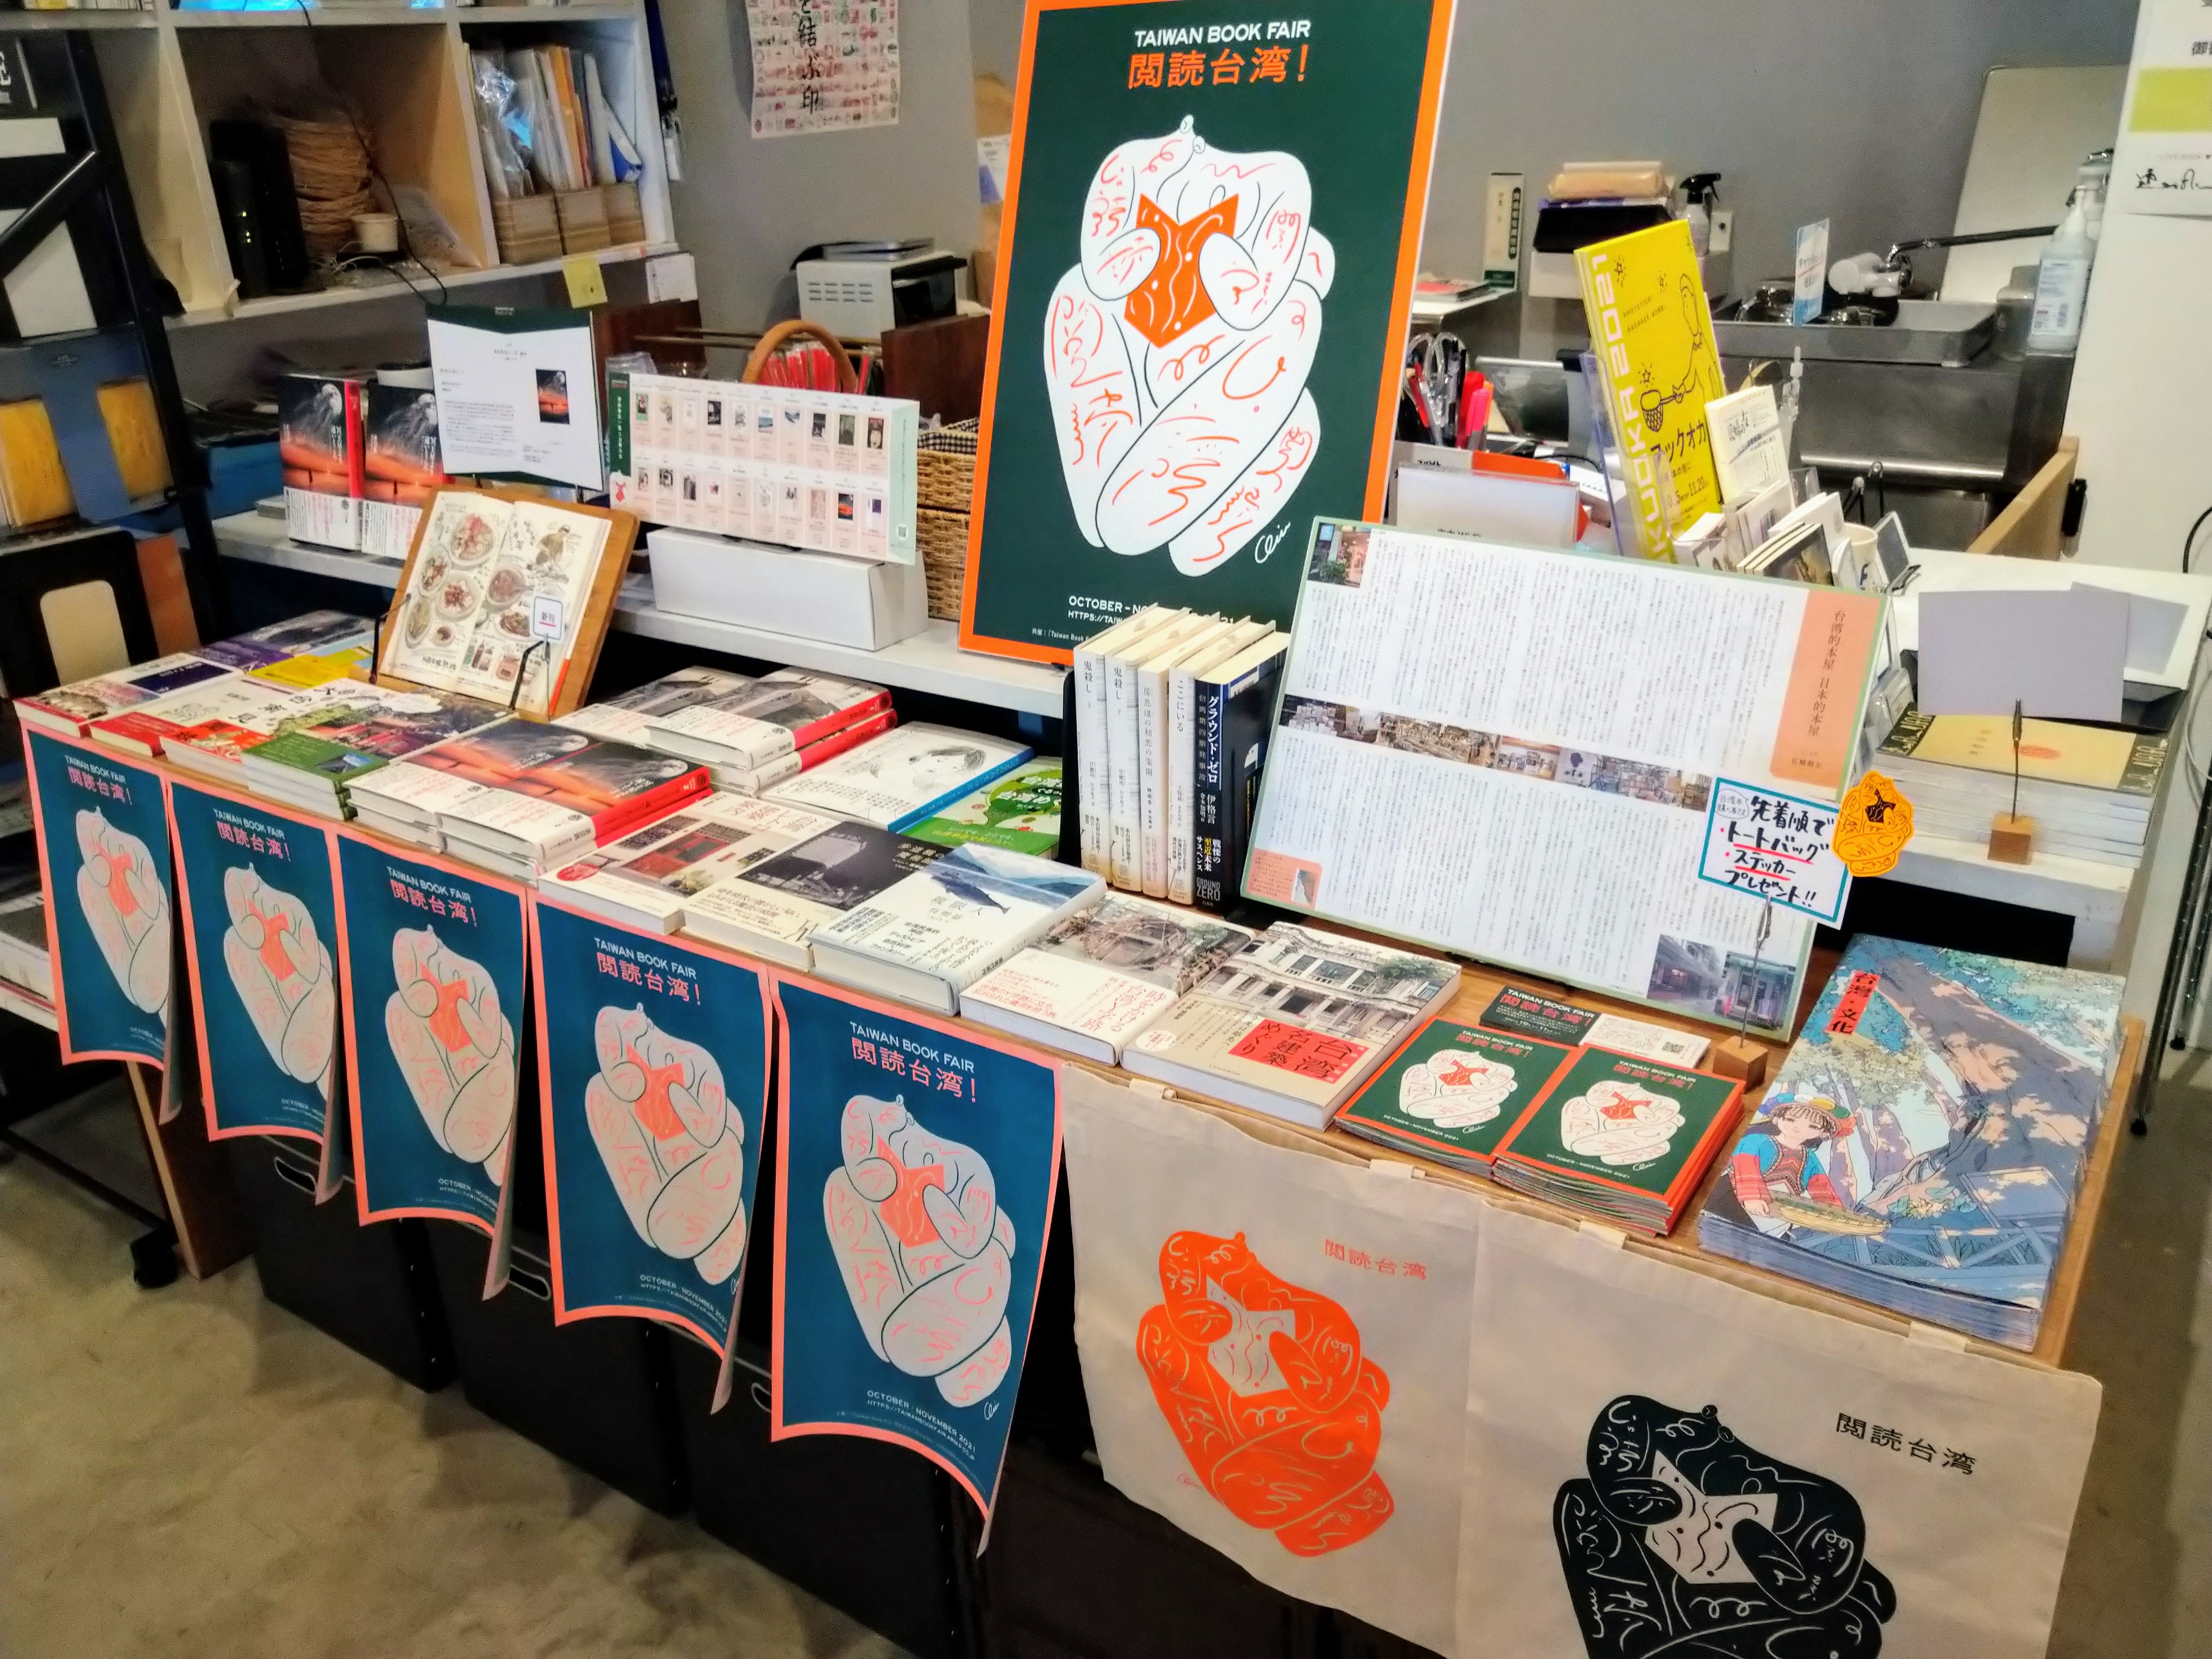 福岡有書的地方 ajiro書店「Taiwan Book Fair 閱讀台灣！」書展